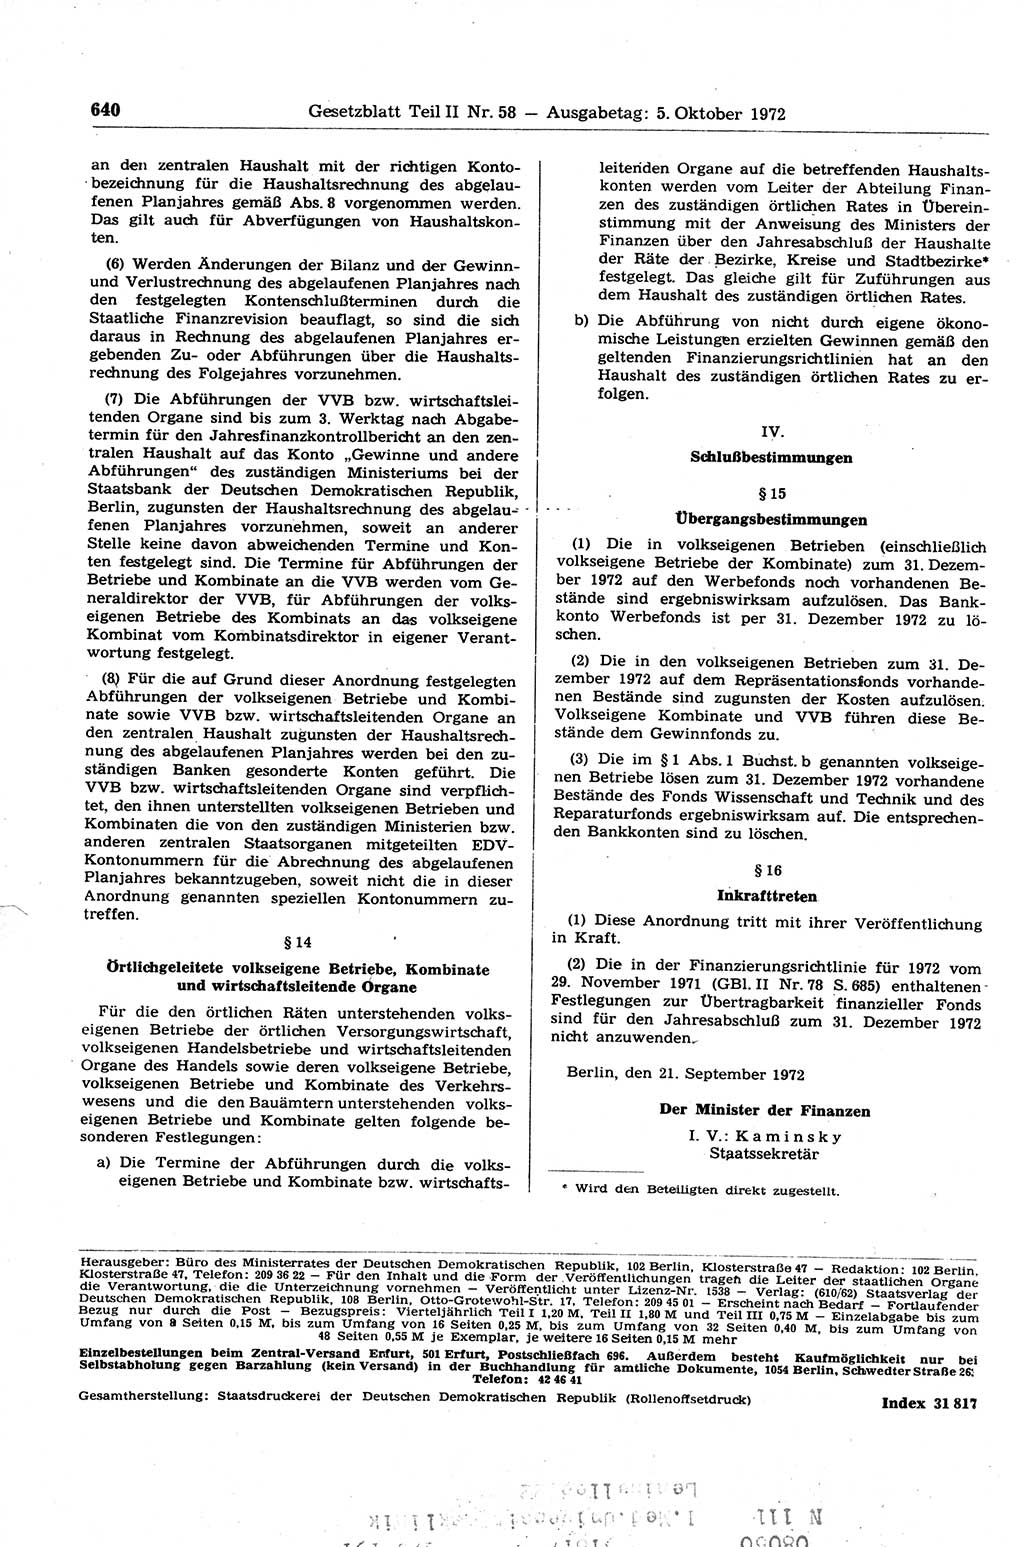 Gesetzblatt (GBl.) der Deutschen Demokratischen Republik (DDR) Teil ⅠⅠ 1972, Seite 640 (GBl. DDR ⅠⅠ 1972, S. 640)